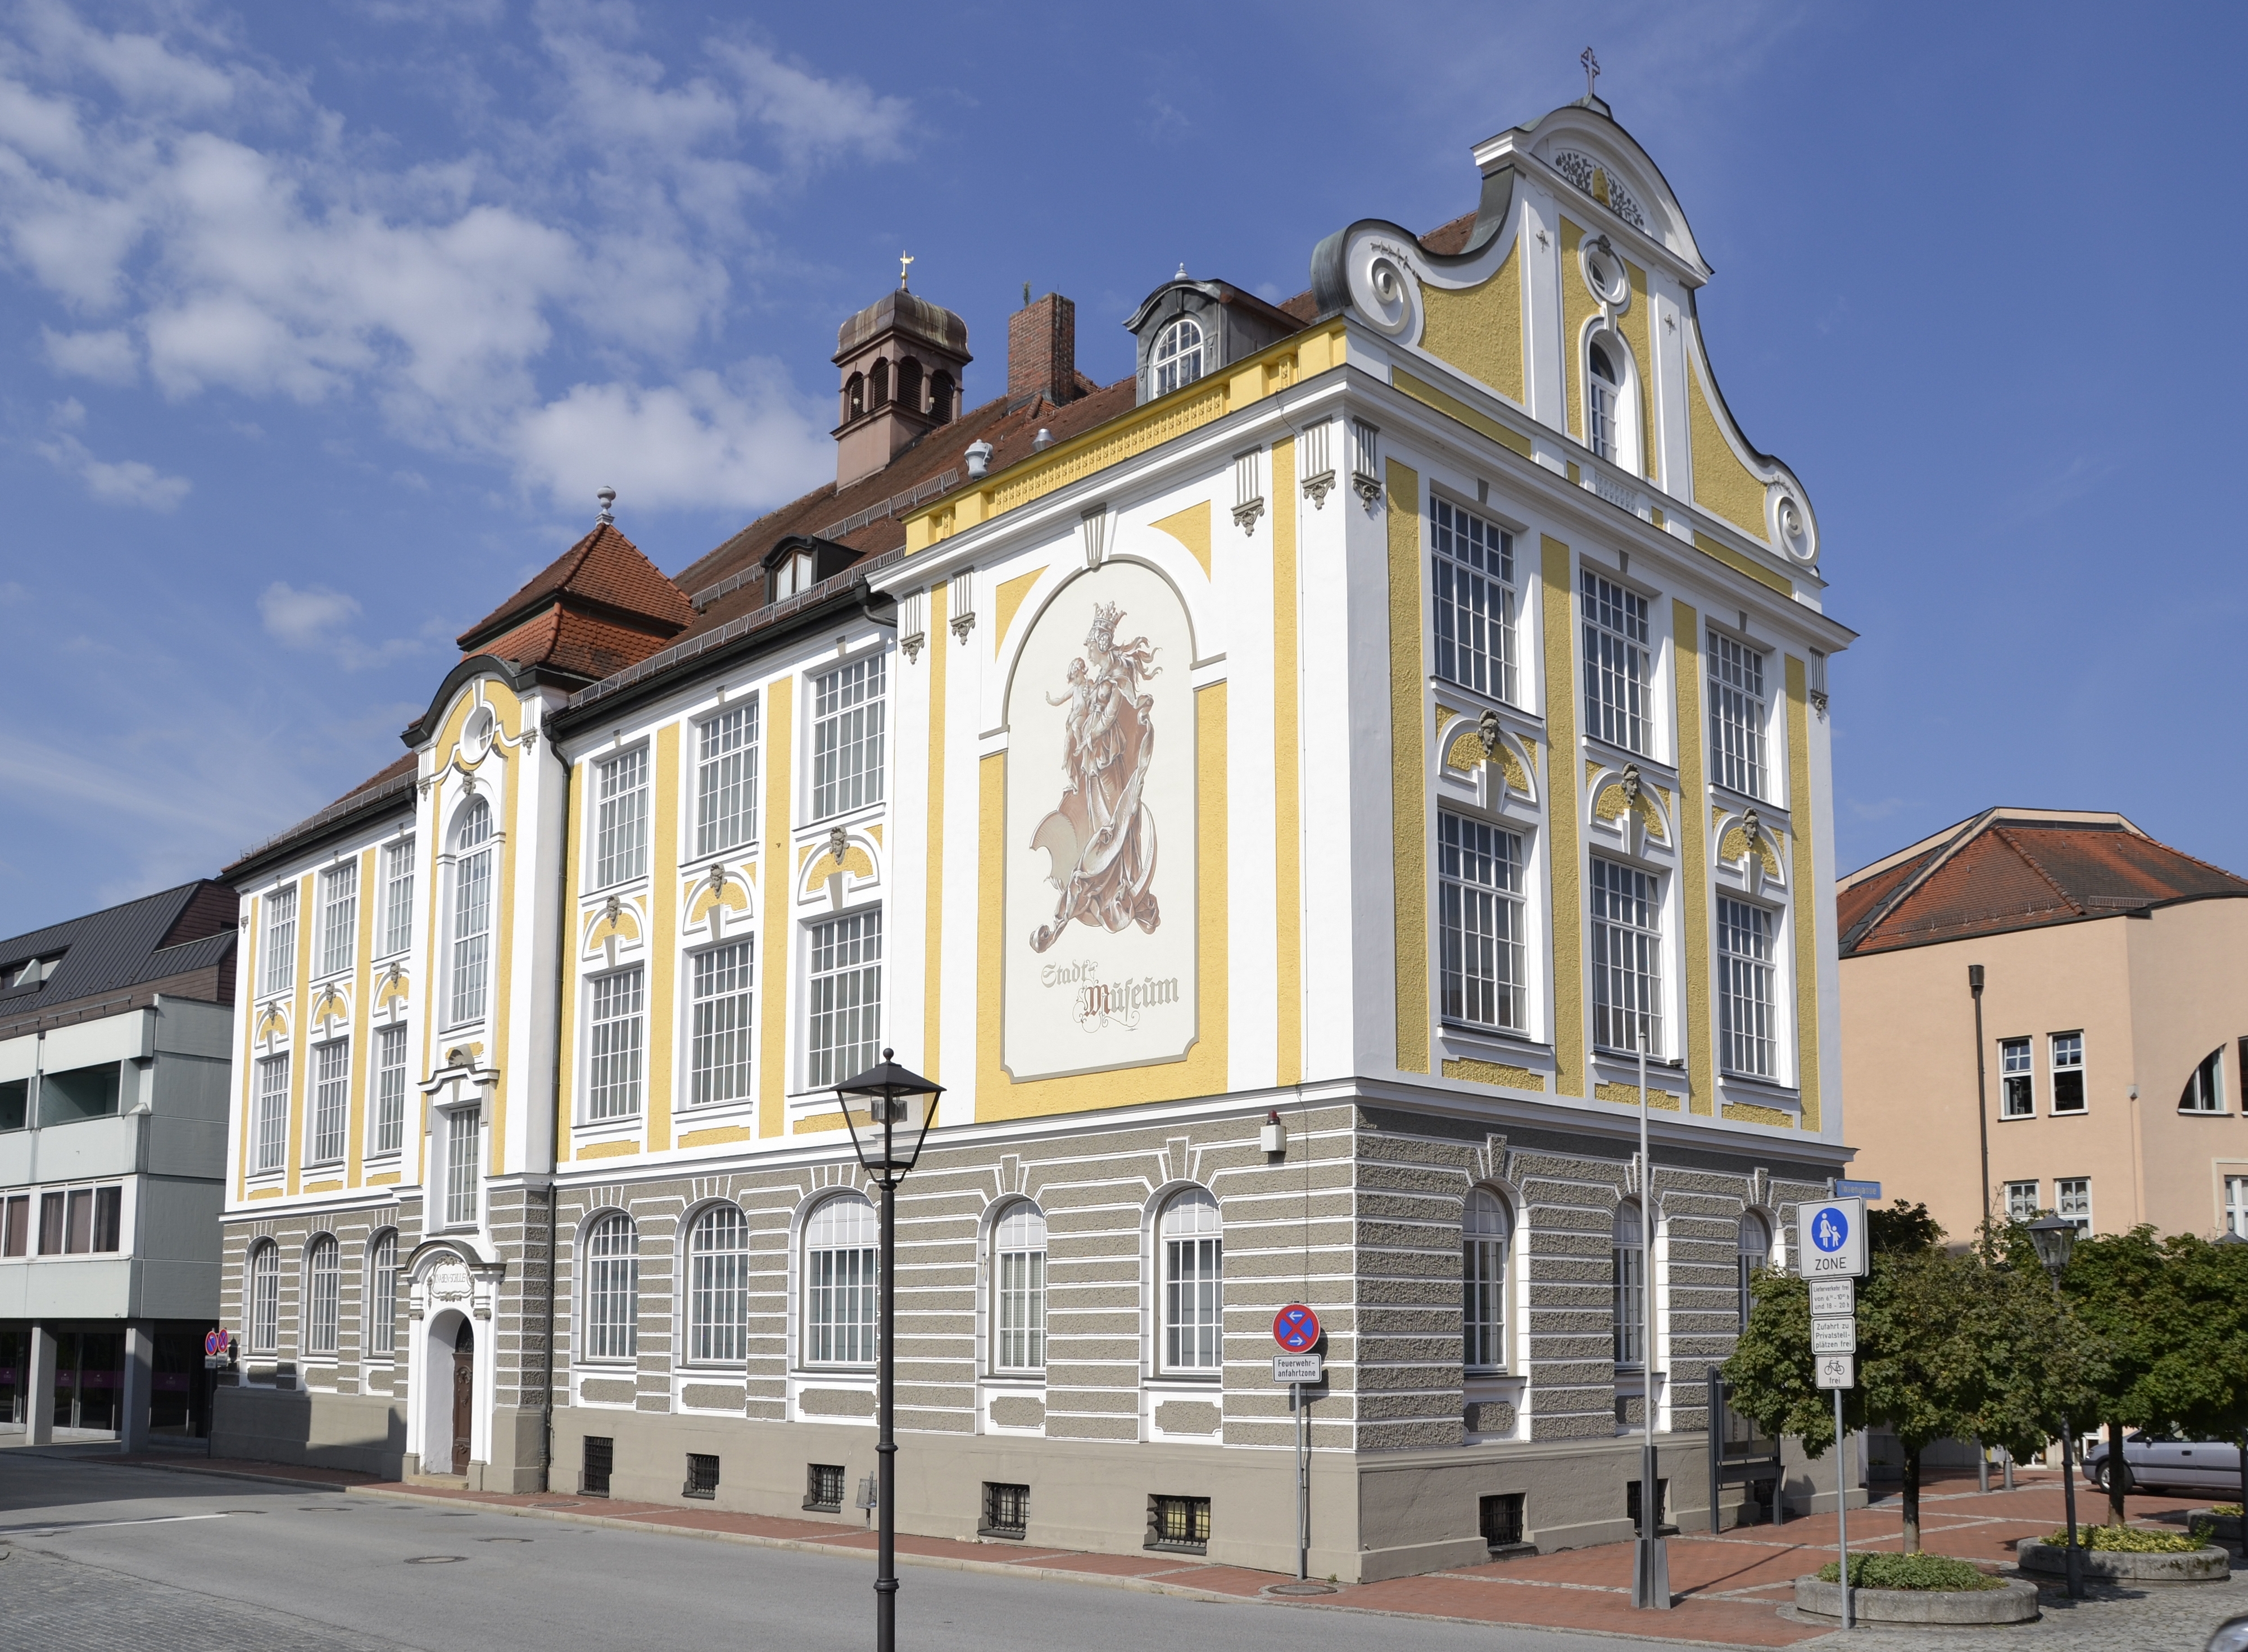 City museum of Deggendorf, Bavaria